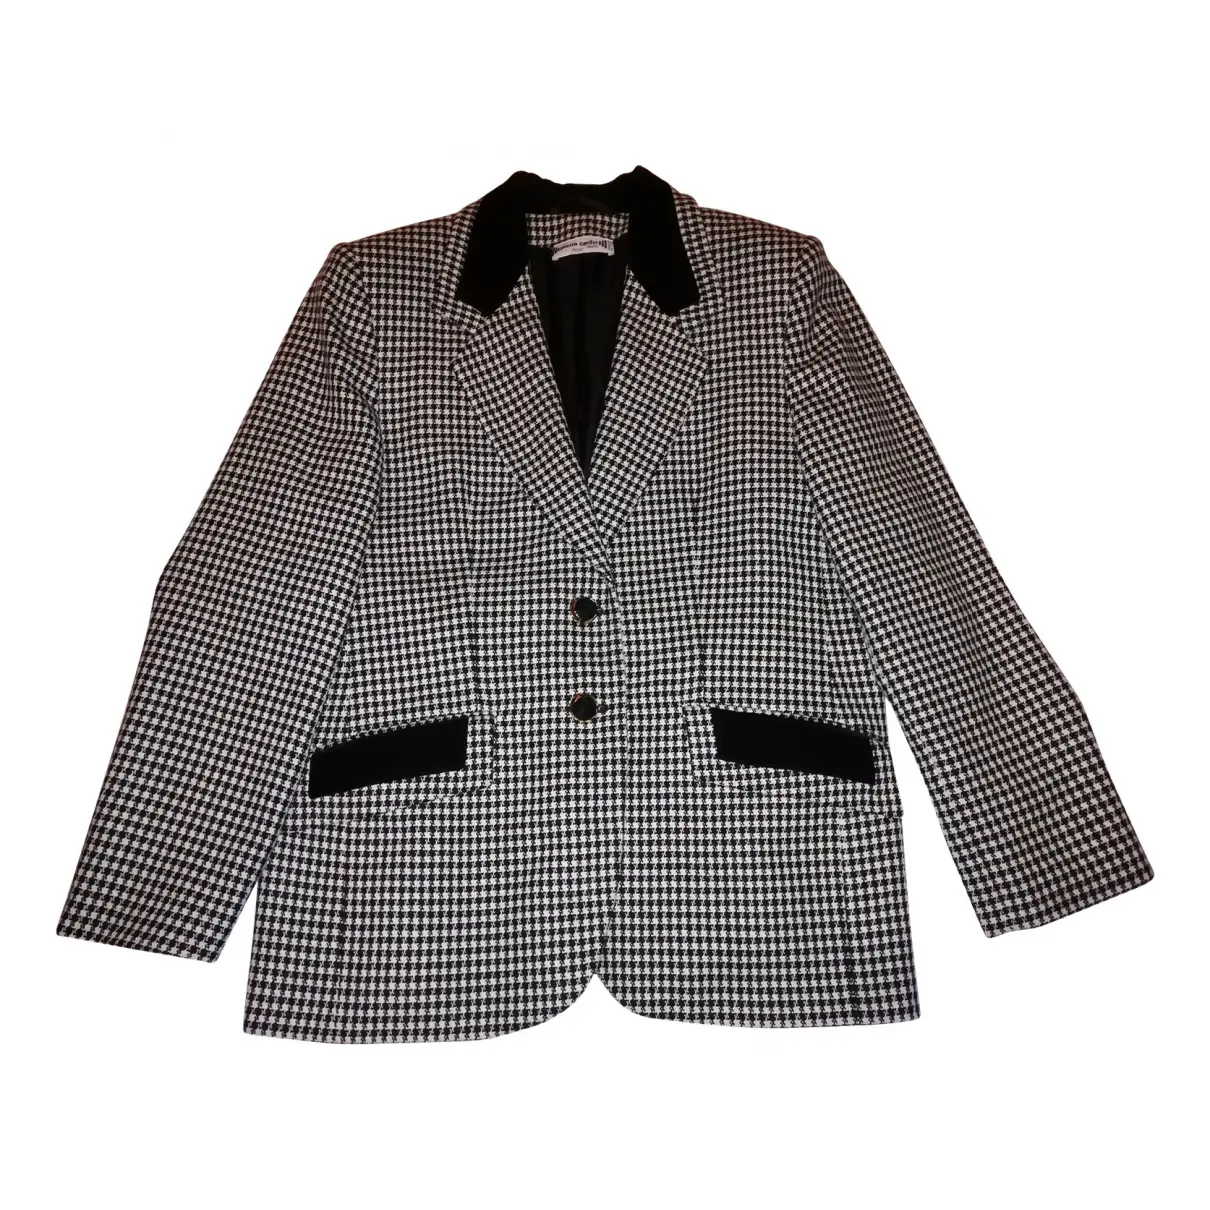 Cashmere suit jacket Pierre Cardin